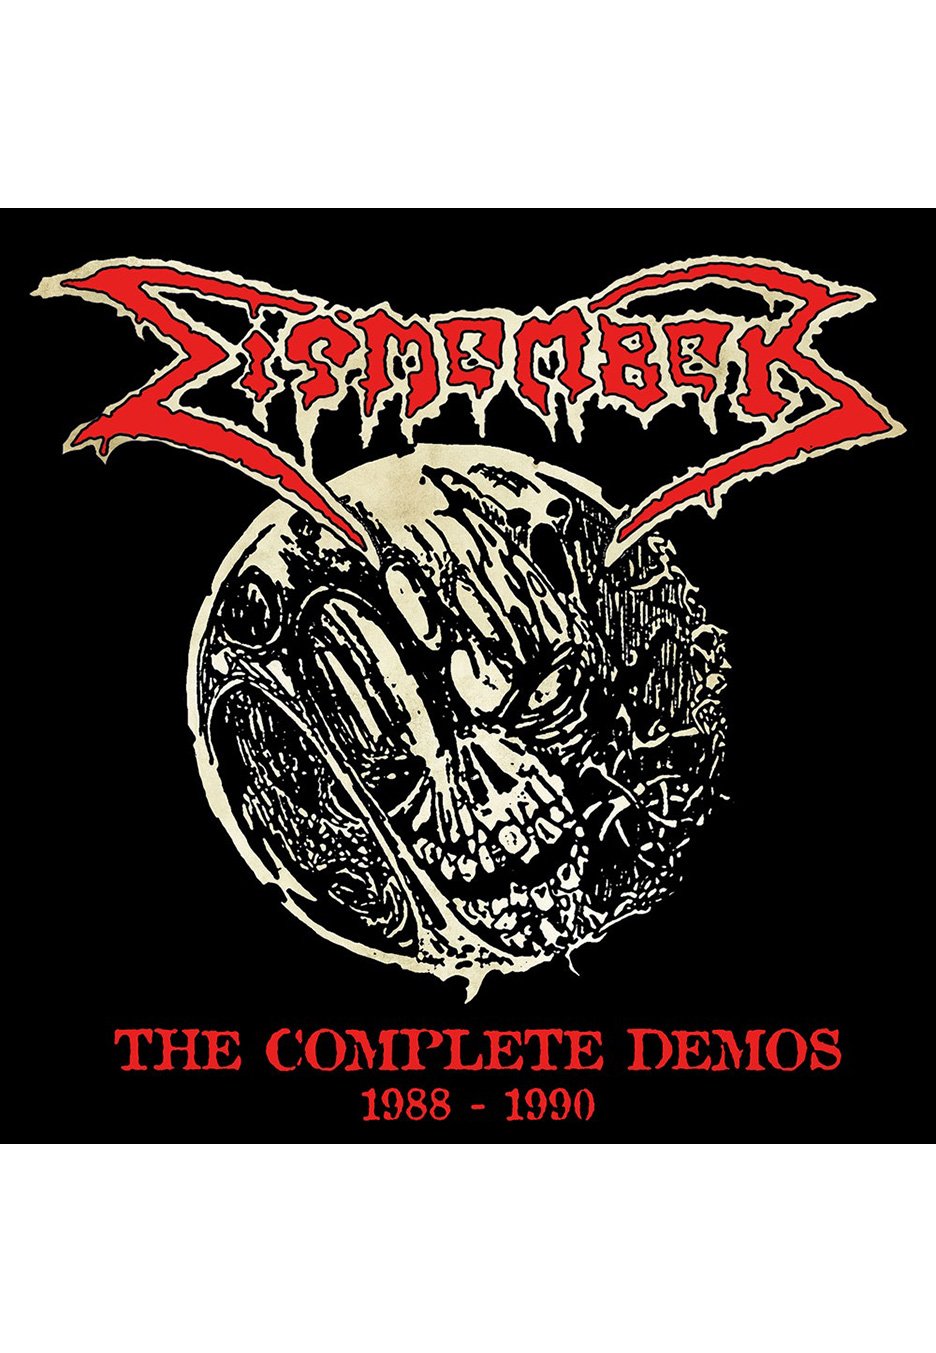 Dismember - The Complete Demos 1988-1990 Ltd. White w/ Red/Black - Splattered Vinyl